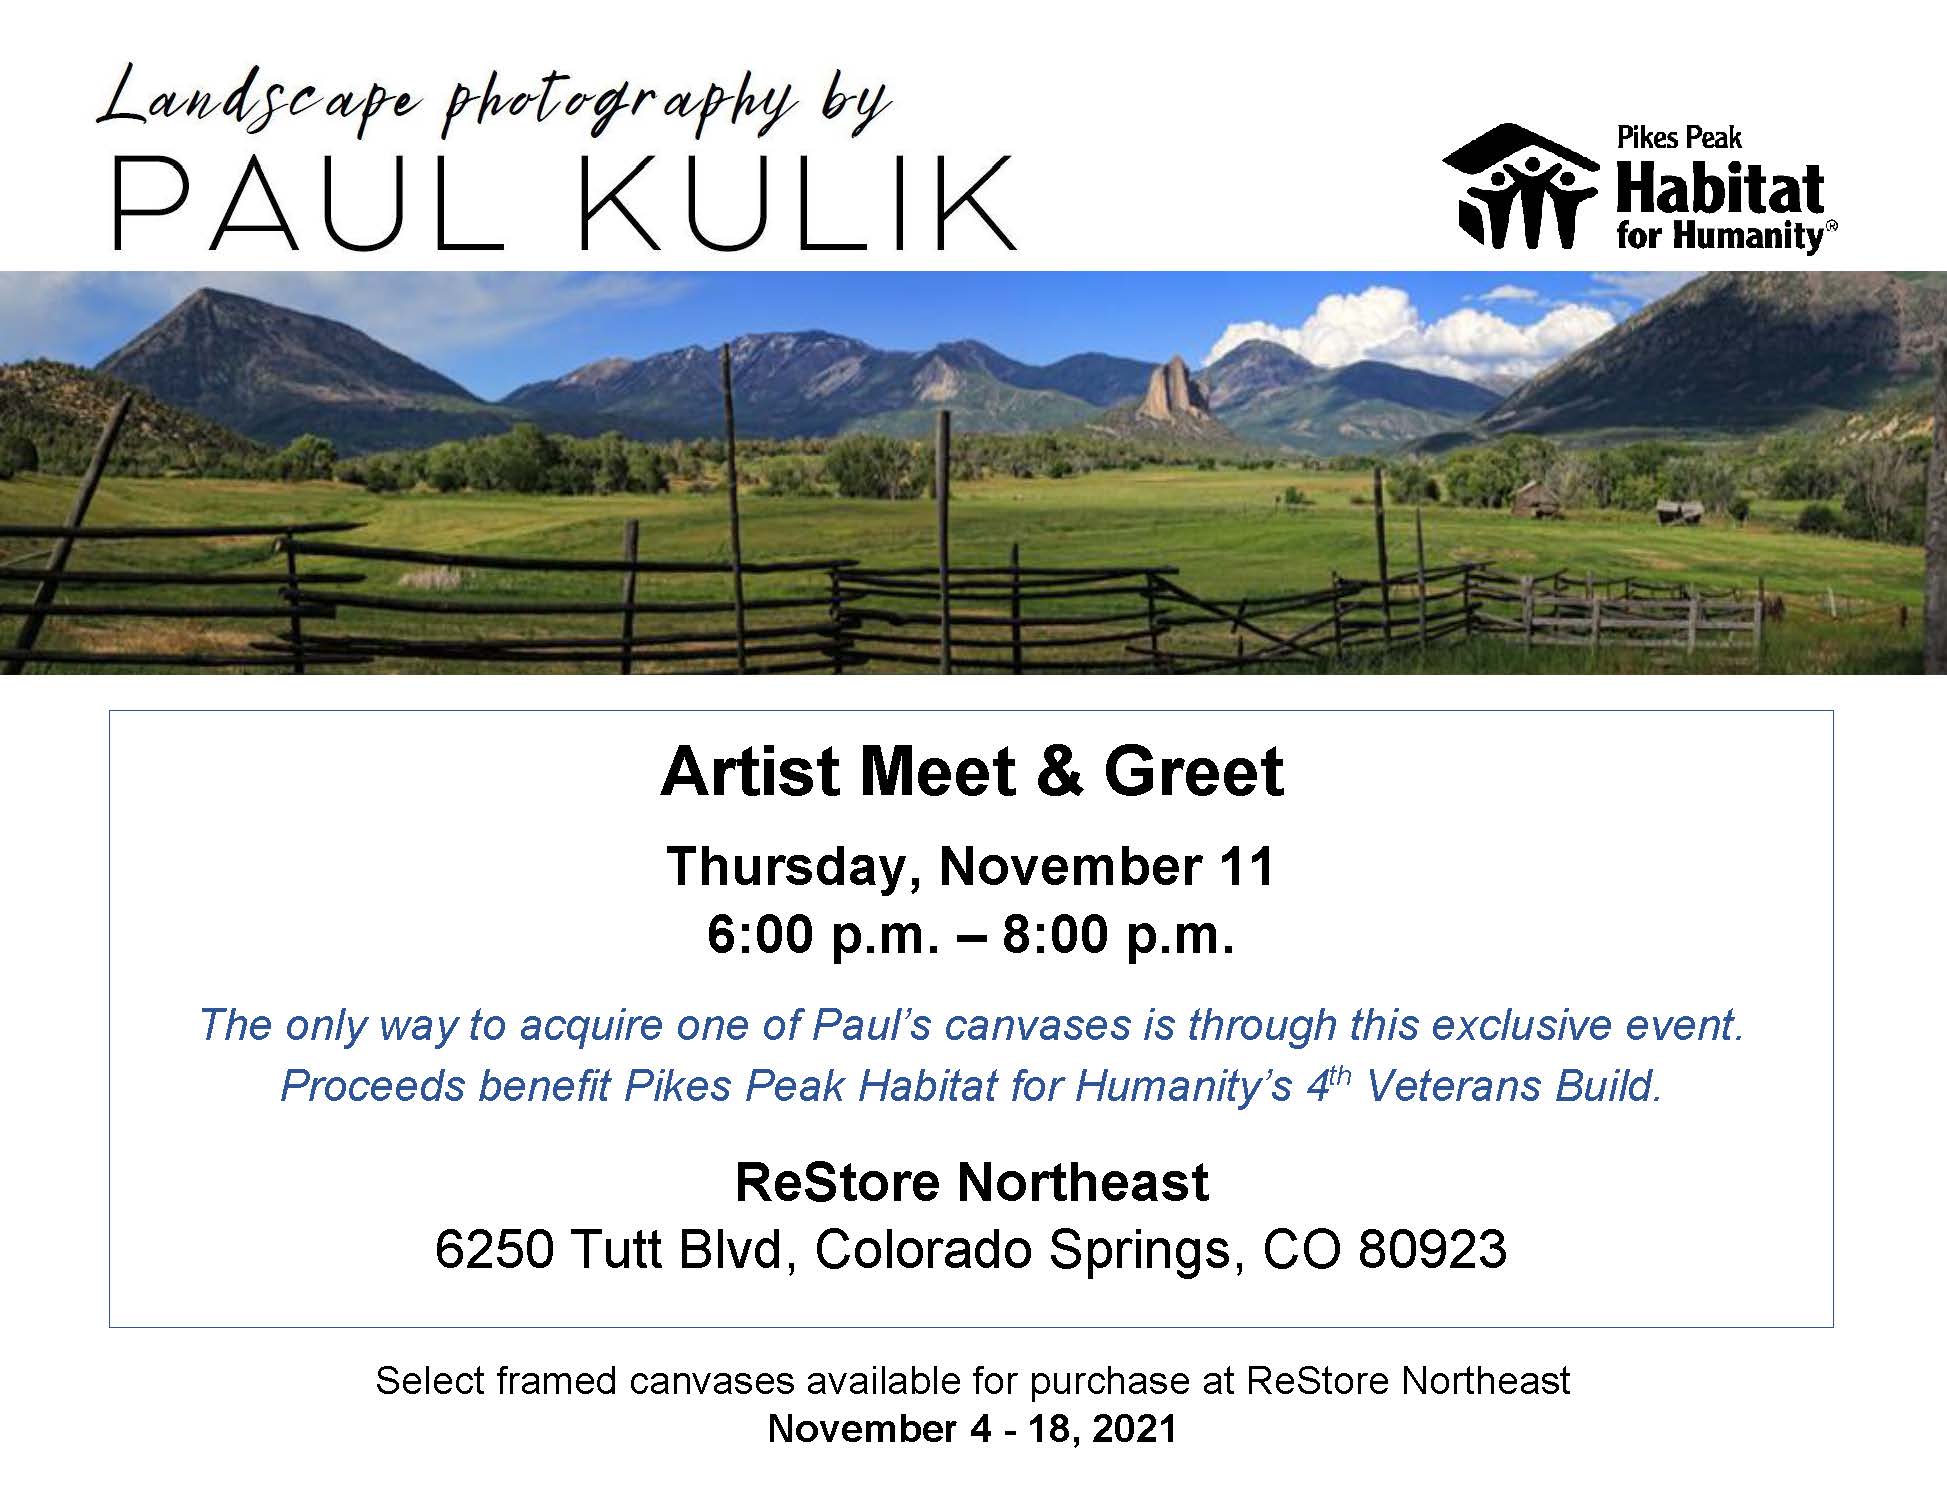 Paul Kulik photo announcement